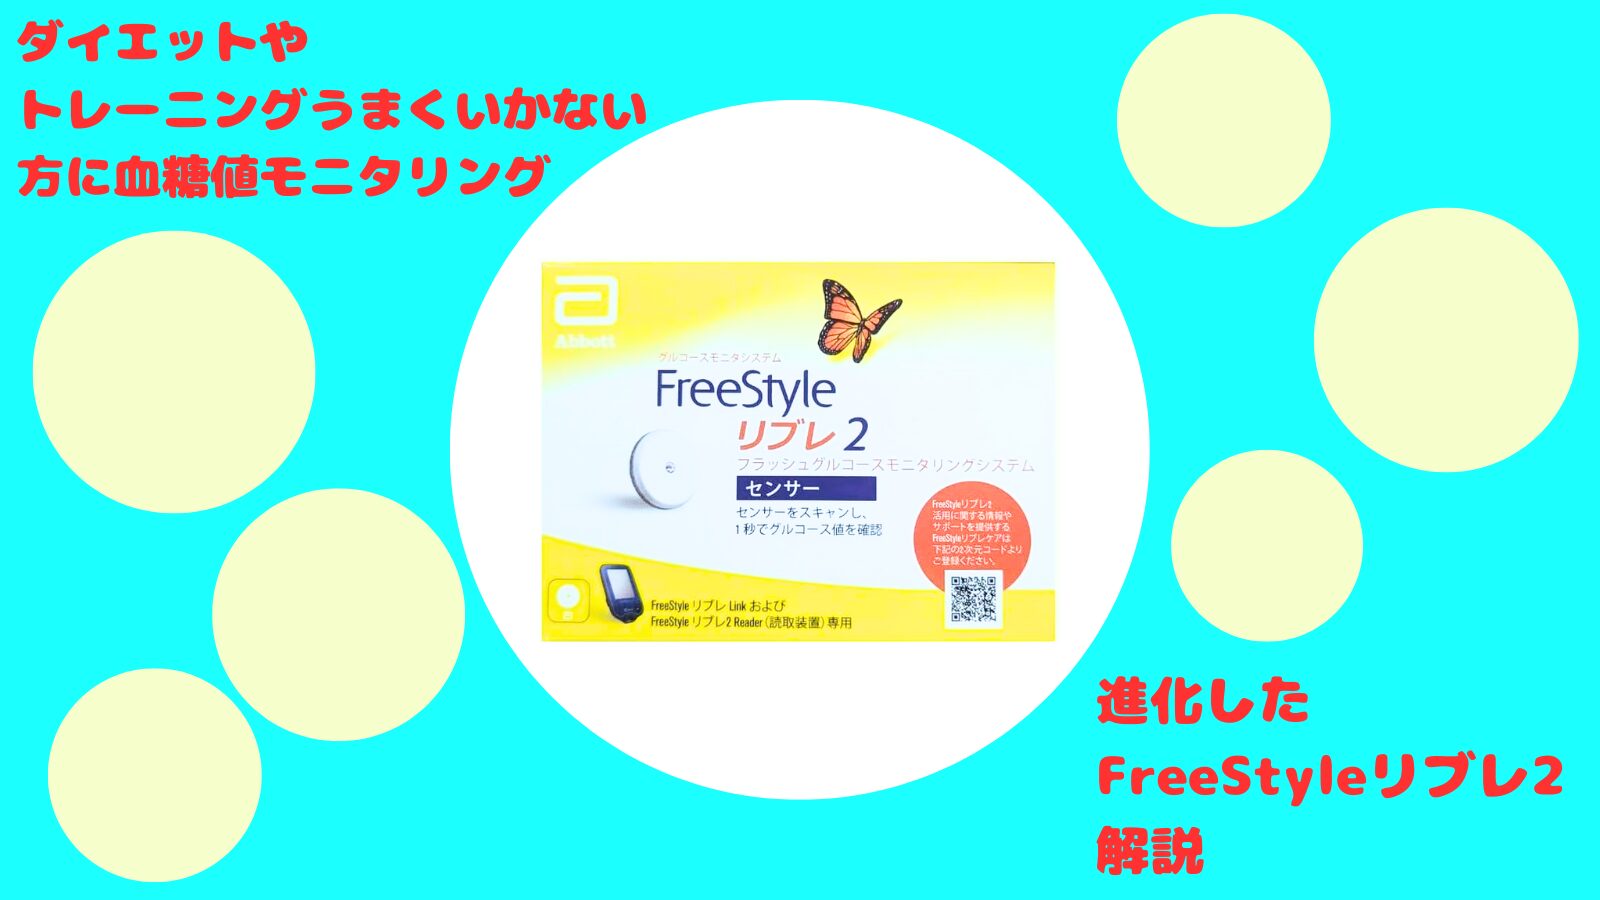 FreeStyle Libre2(フリースタイル リブレ2)日本で発売開始 従来との違い等解説